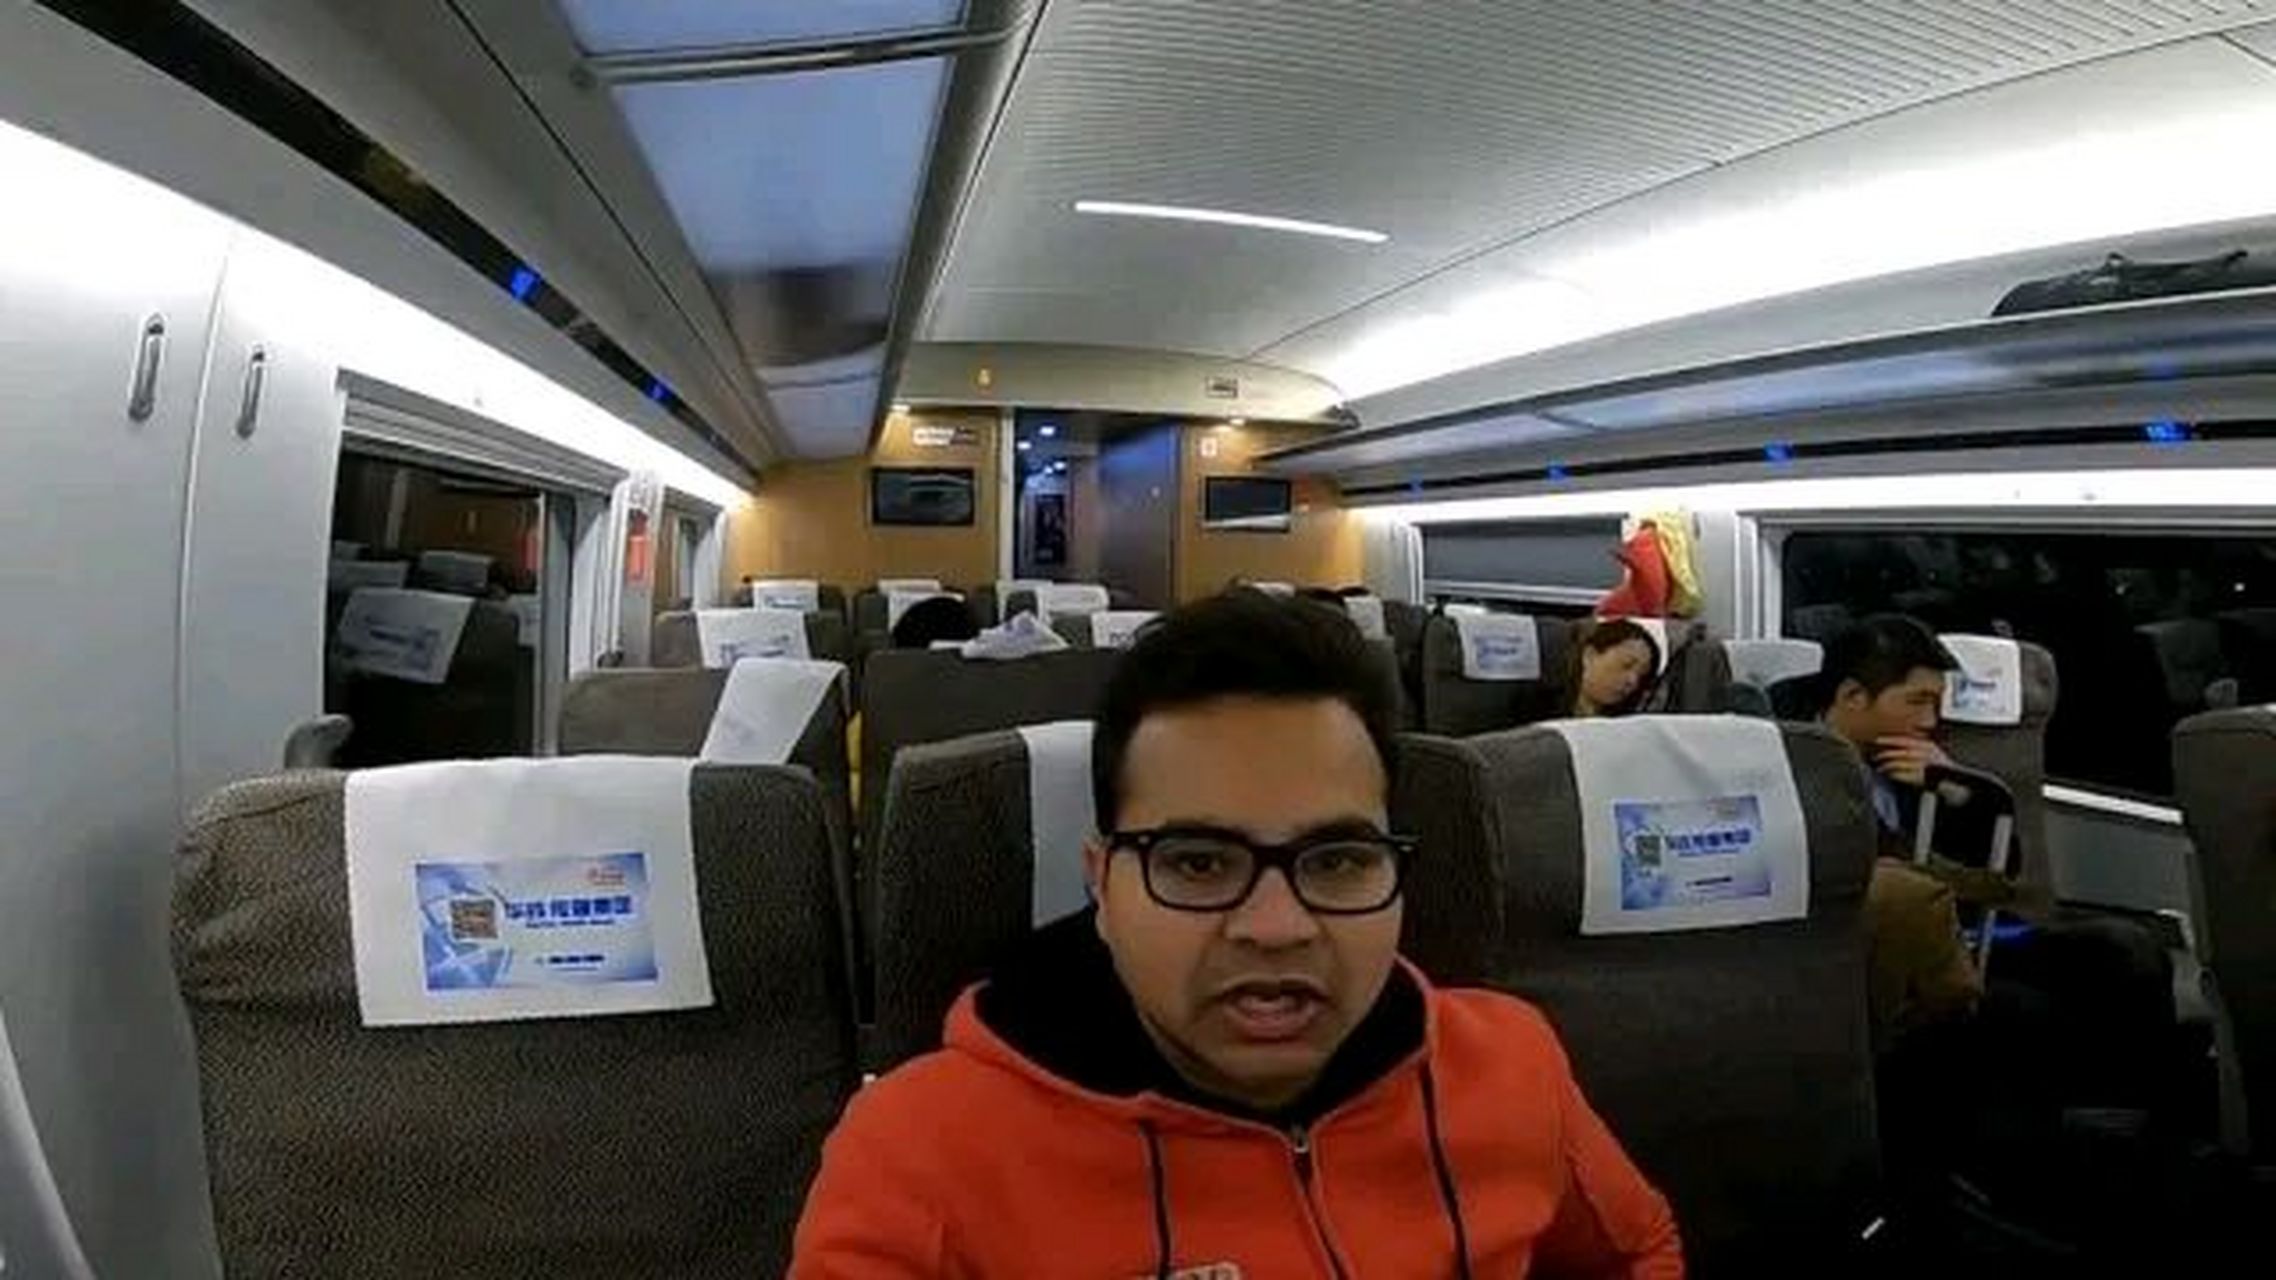 有一位印度专家,他第一次乘坐中国的高铁,刚上车就怒了,那么究竟是